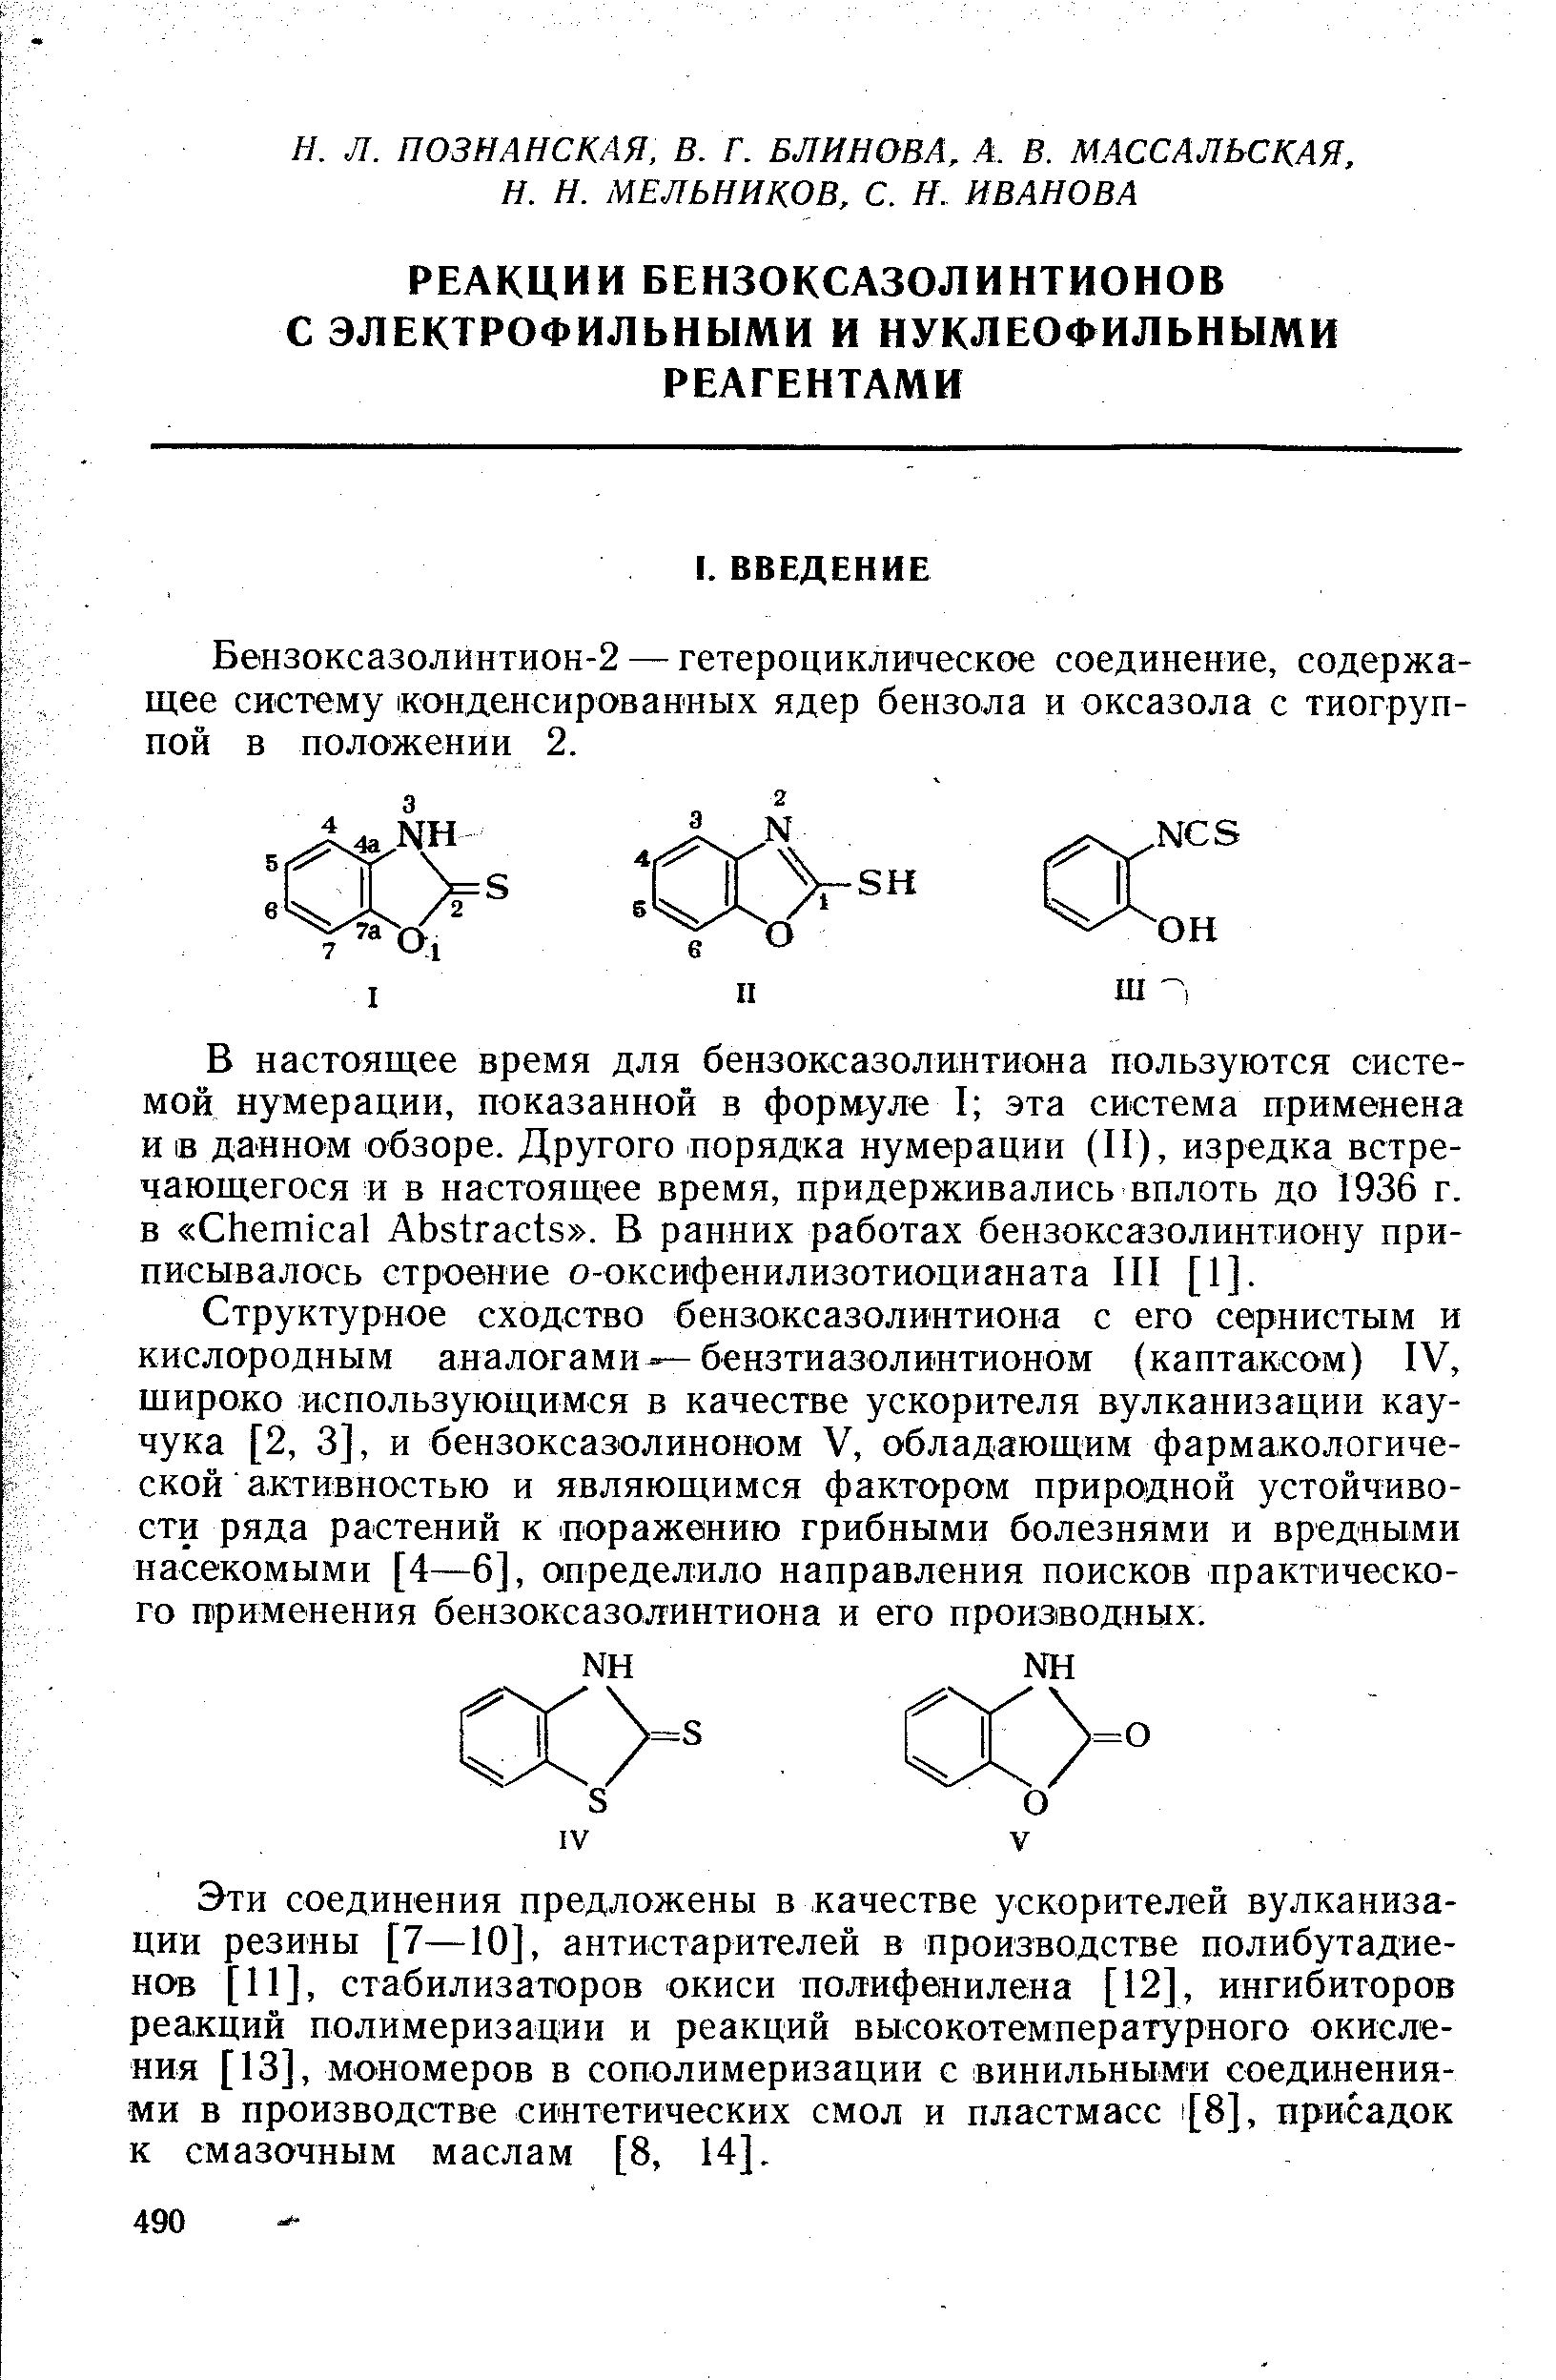 Бензоксазолинтион-2 — гетероциклическое соединение, содержащее систему конденсированных ядер бензола и оксазола с тиогруп-пой в положении 2.